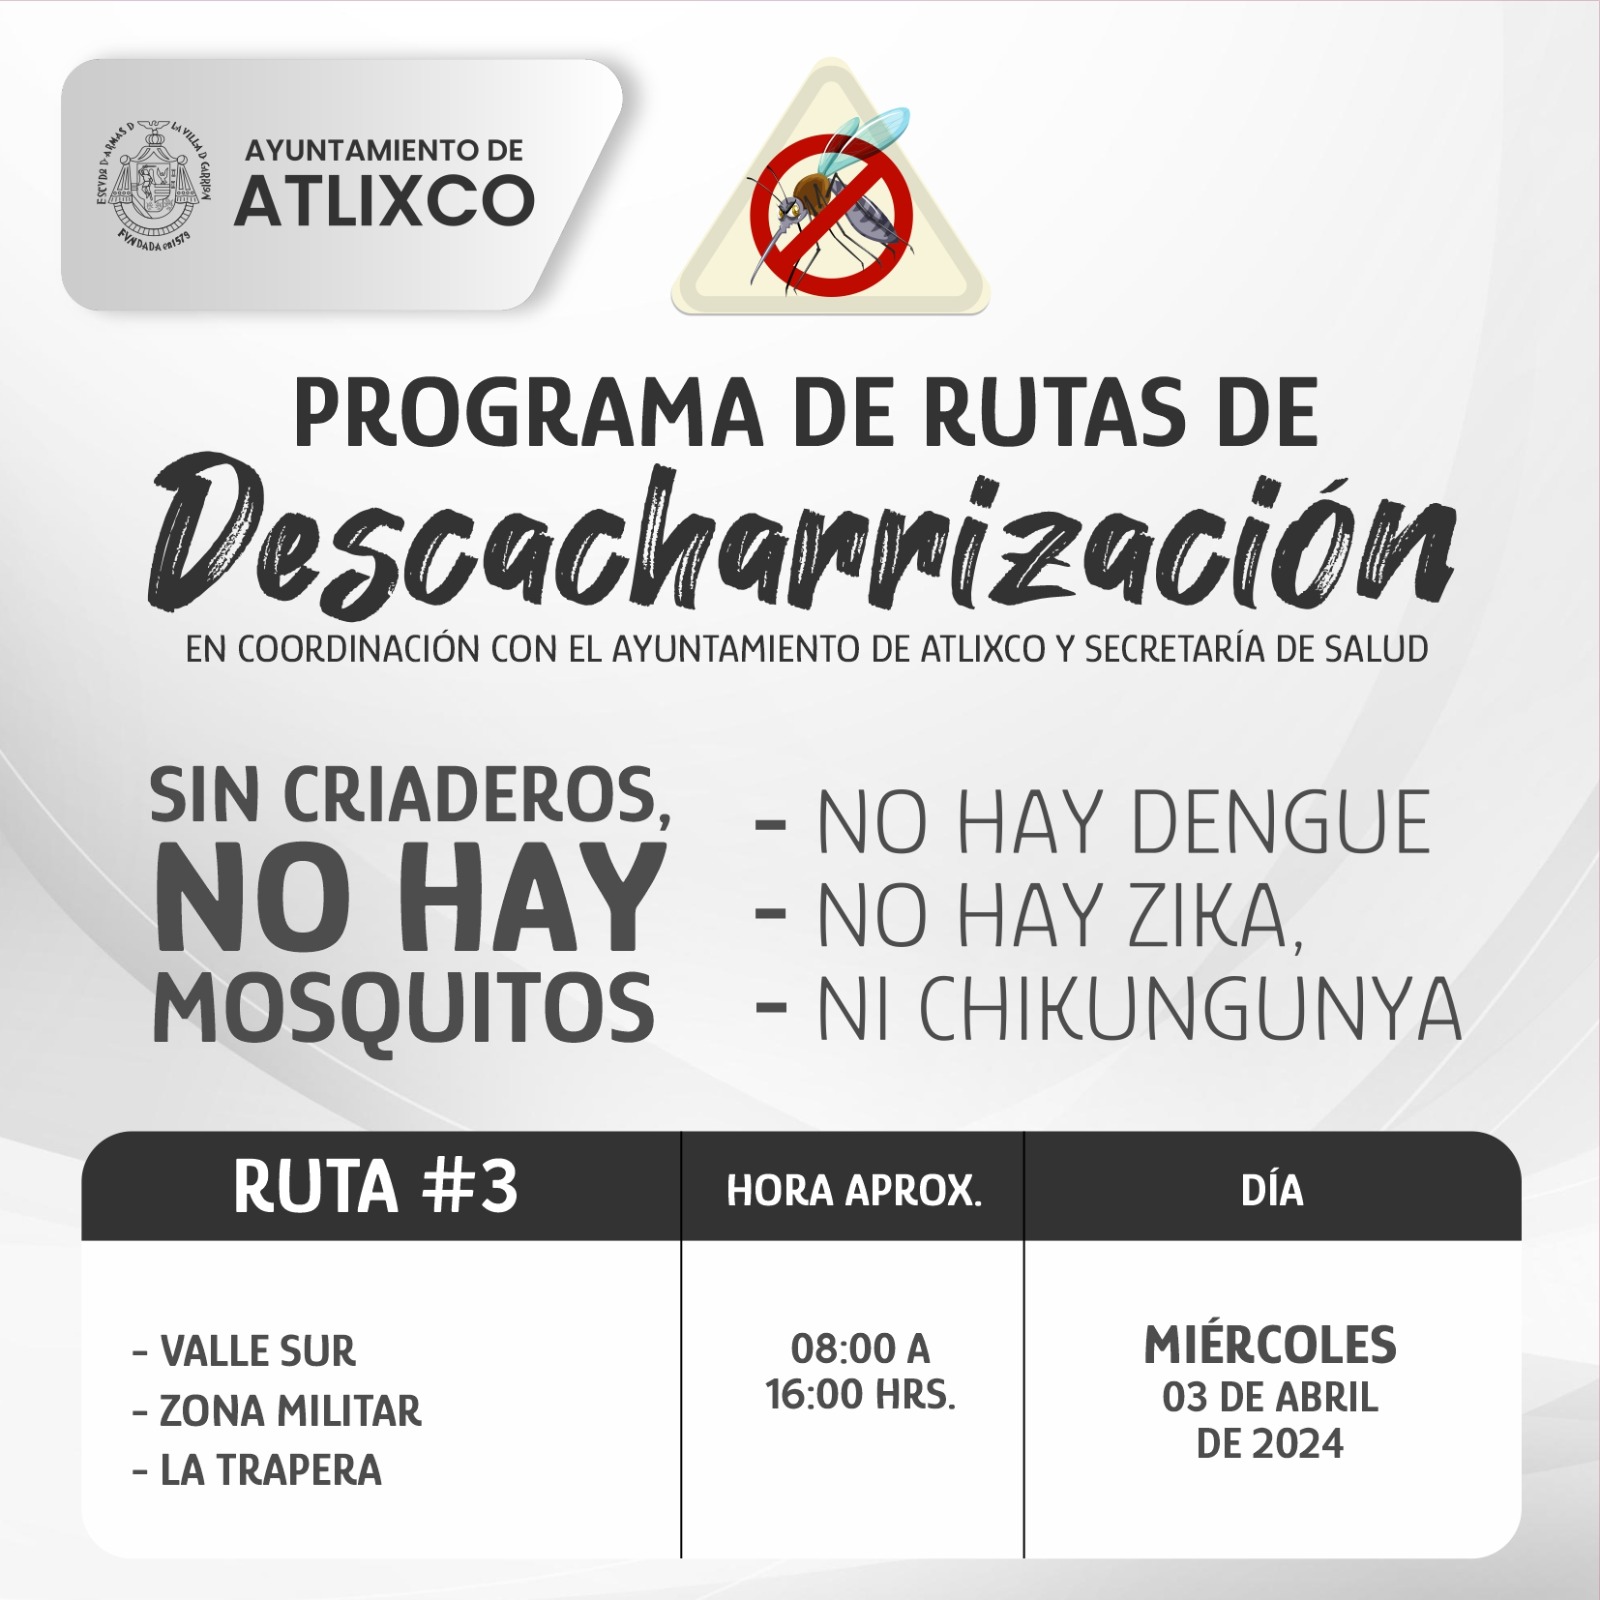 Desde Atlixco: Ayuntamiento realiza campaña contra el dengue y otras enfermedades transmitidas por moscos